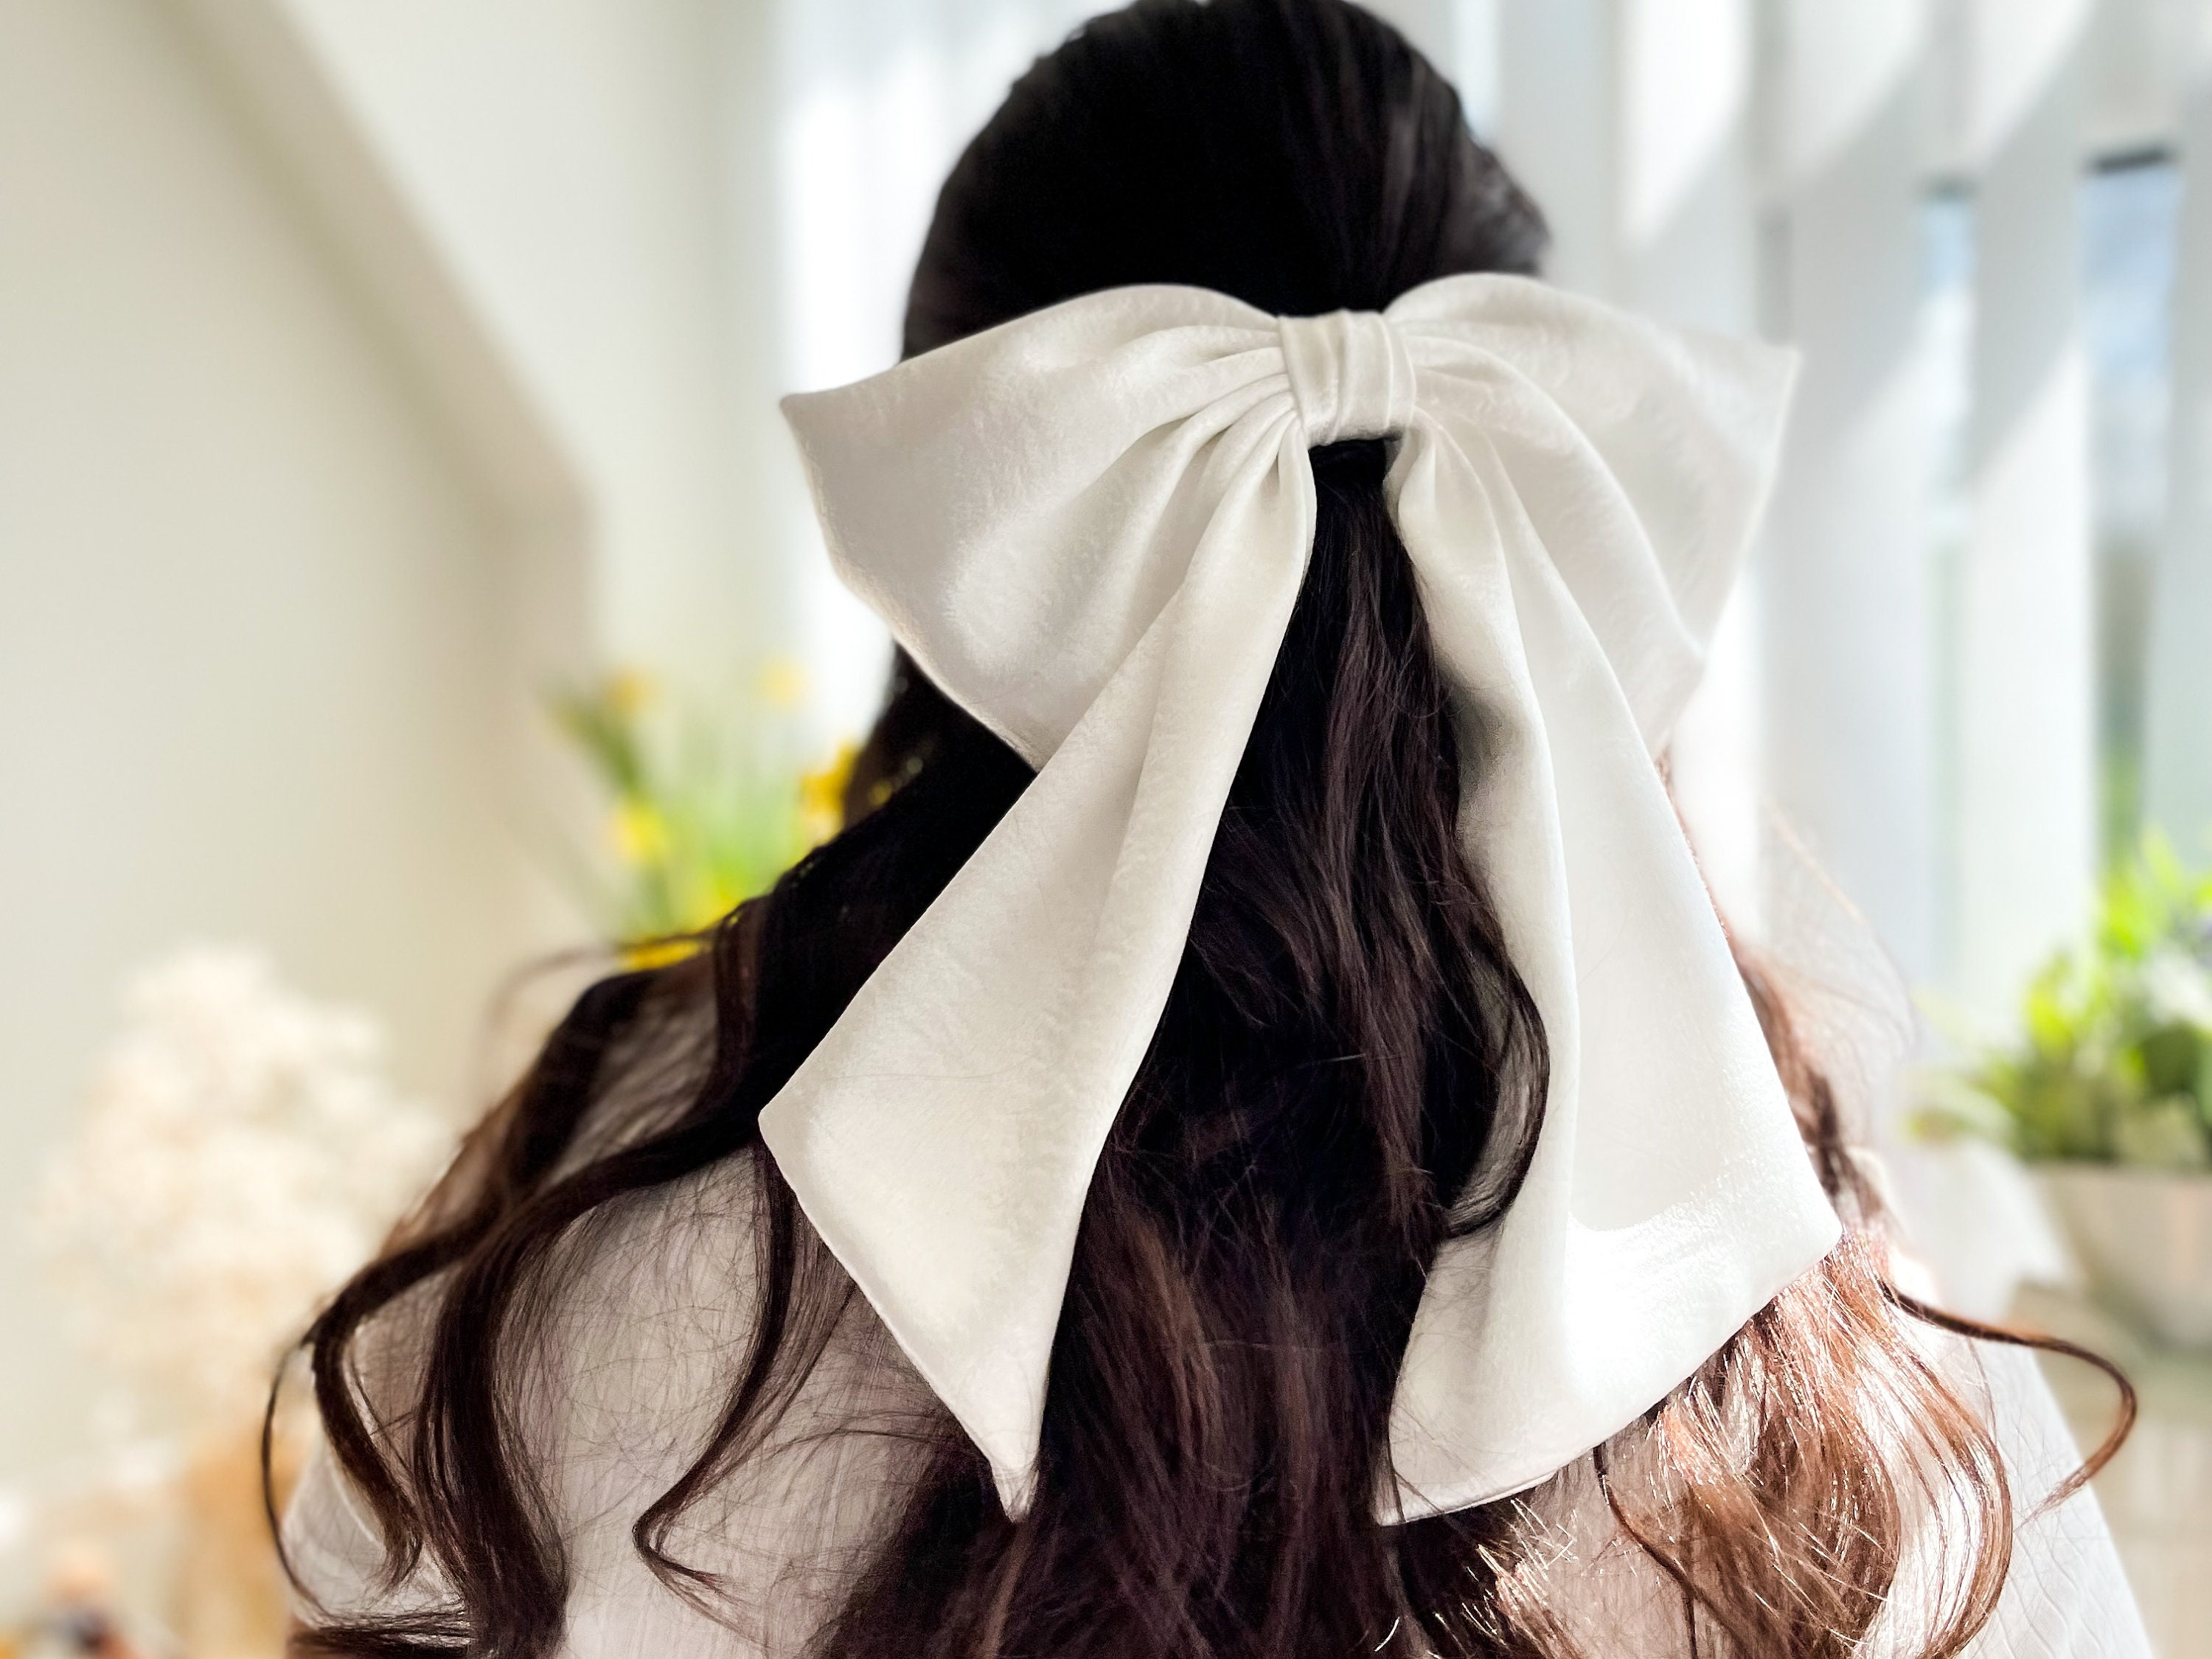 White Satin Hair Bow 